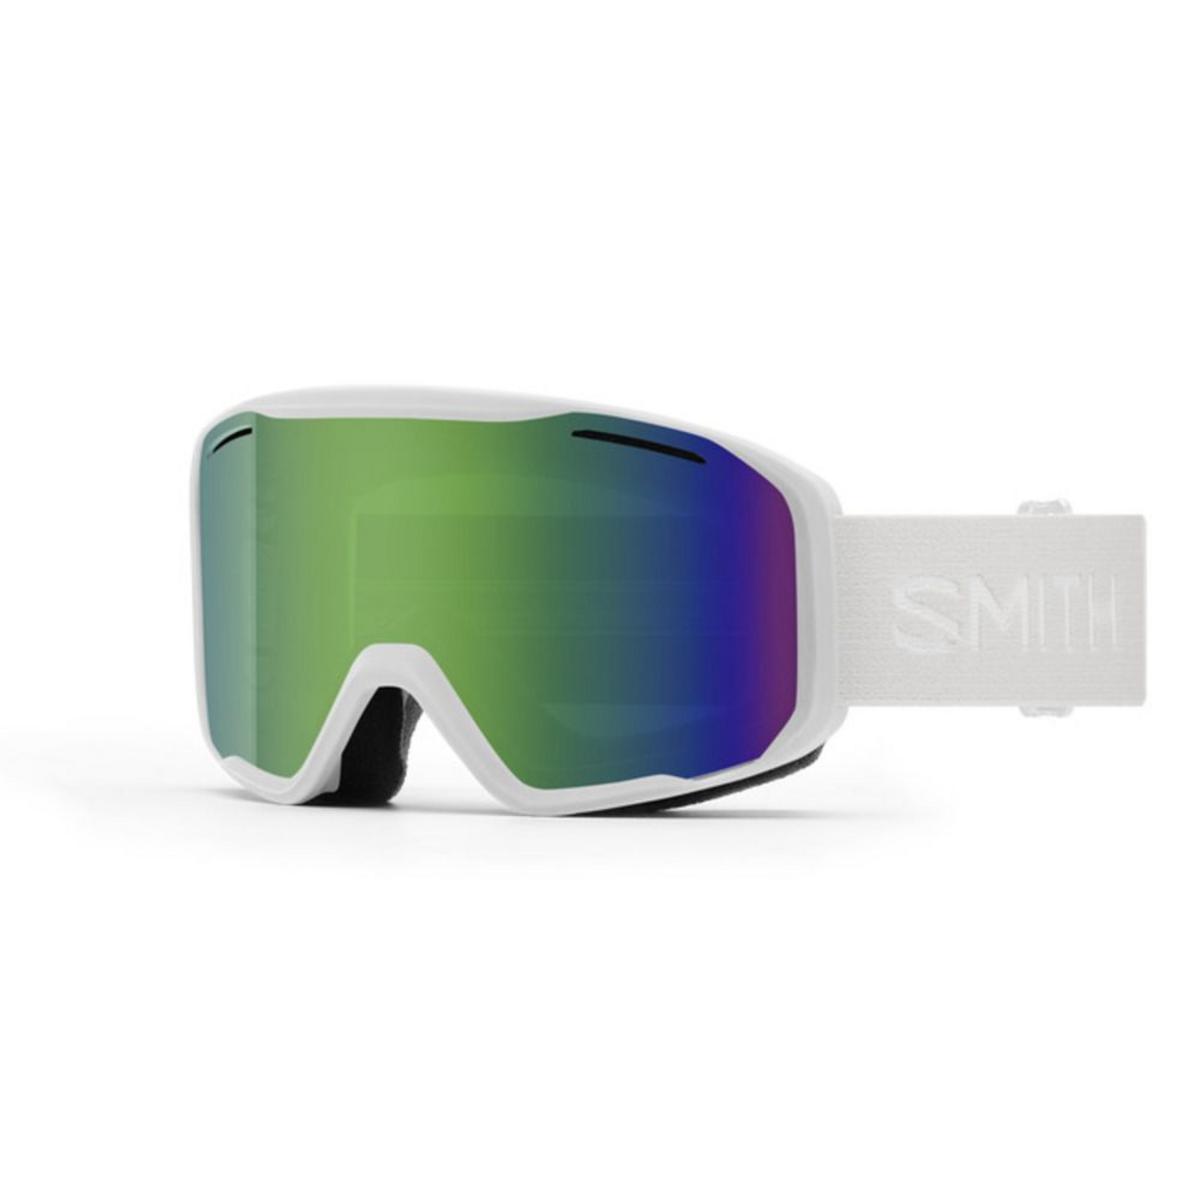 Smith Optics Blazer Goggles Green Sol-X Mirror - White Frame